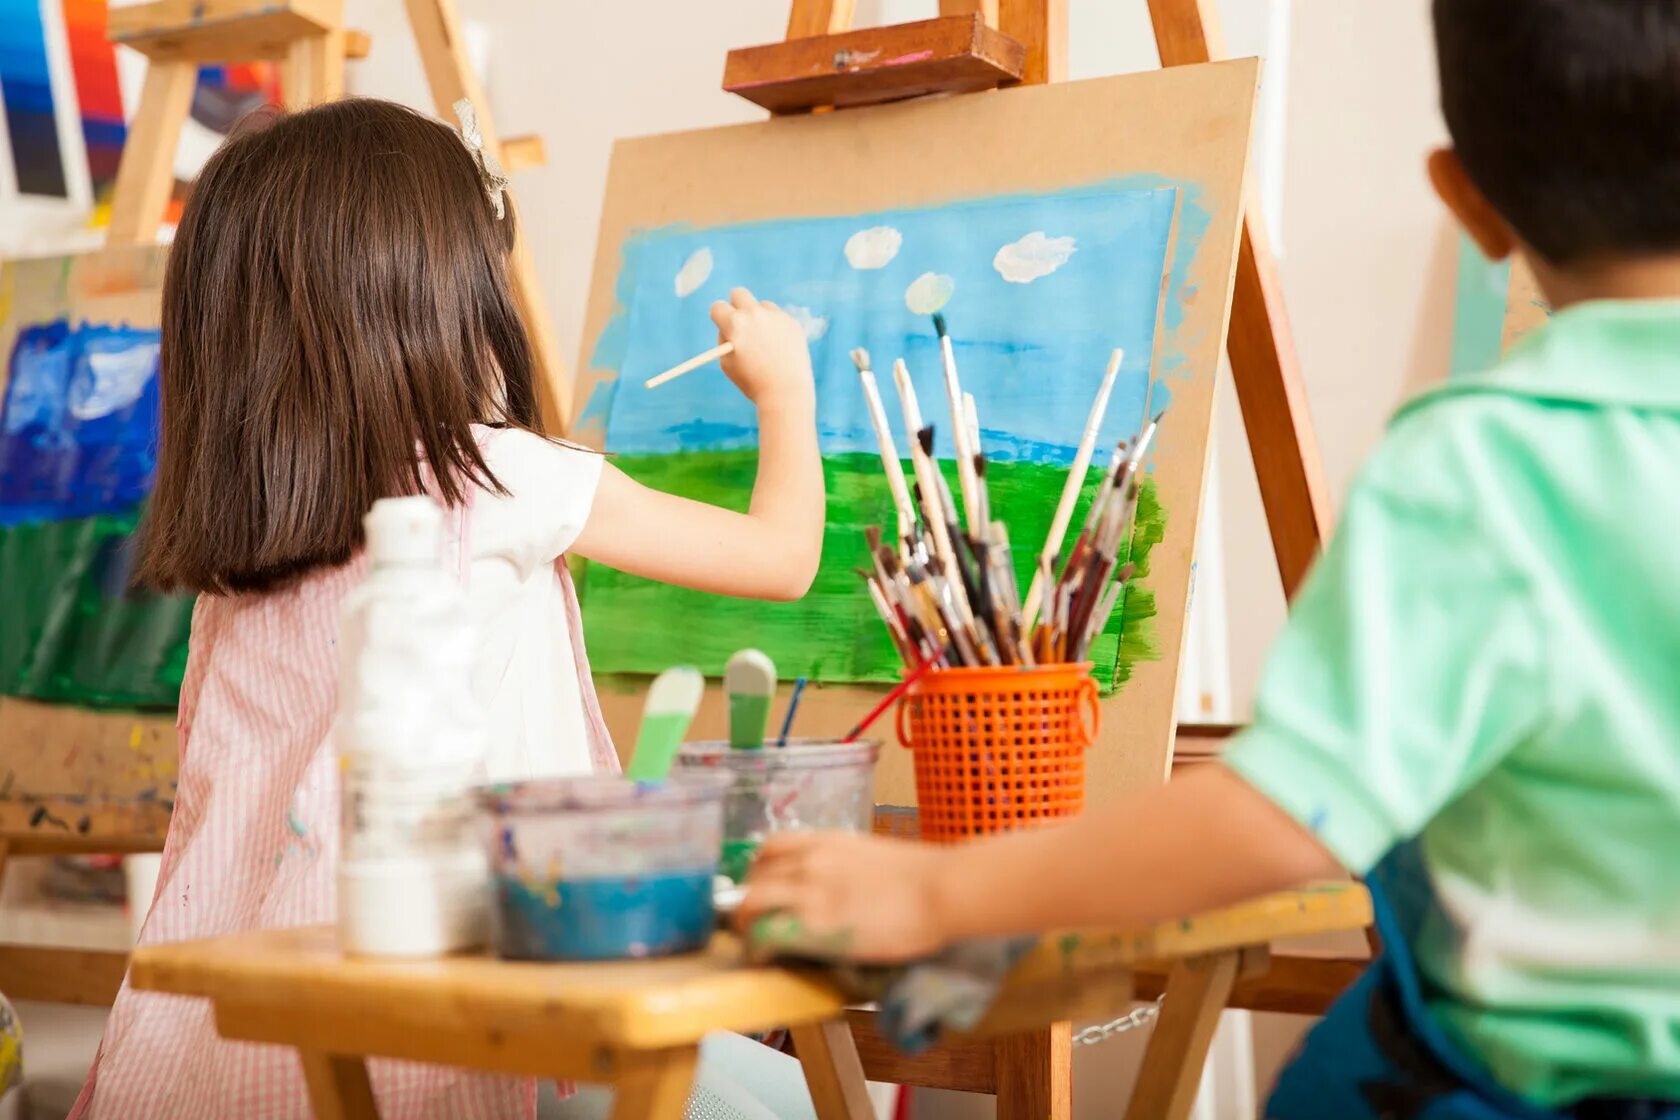 Did you paint a picture. Изо для детей. Художественное рисование для детей. Мастер класс по рисованию для детей. Занятия рисованием с детьми.